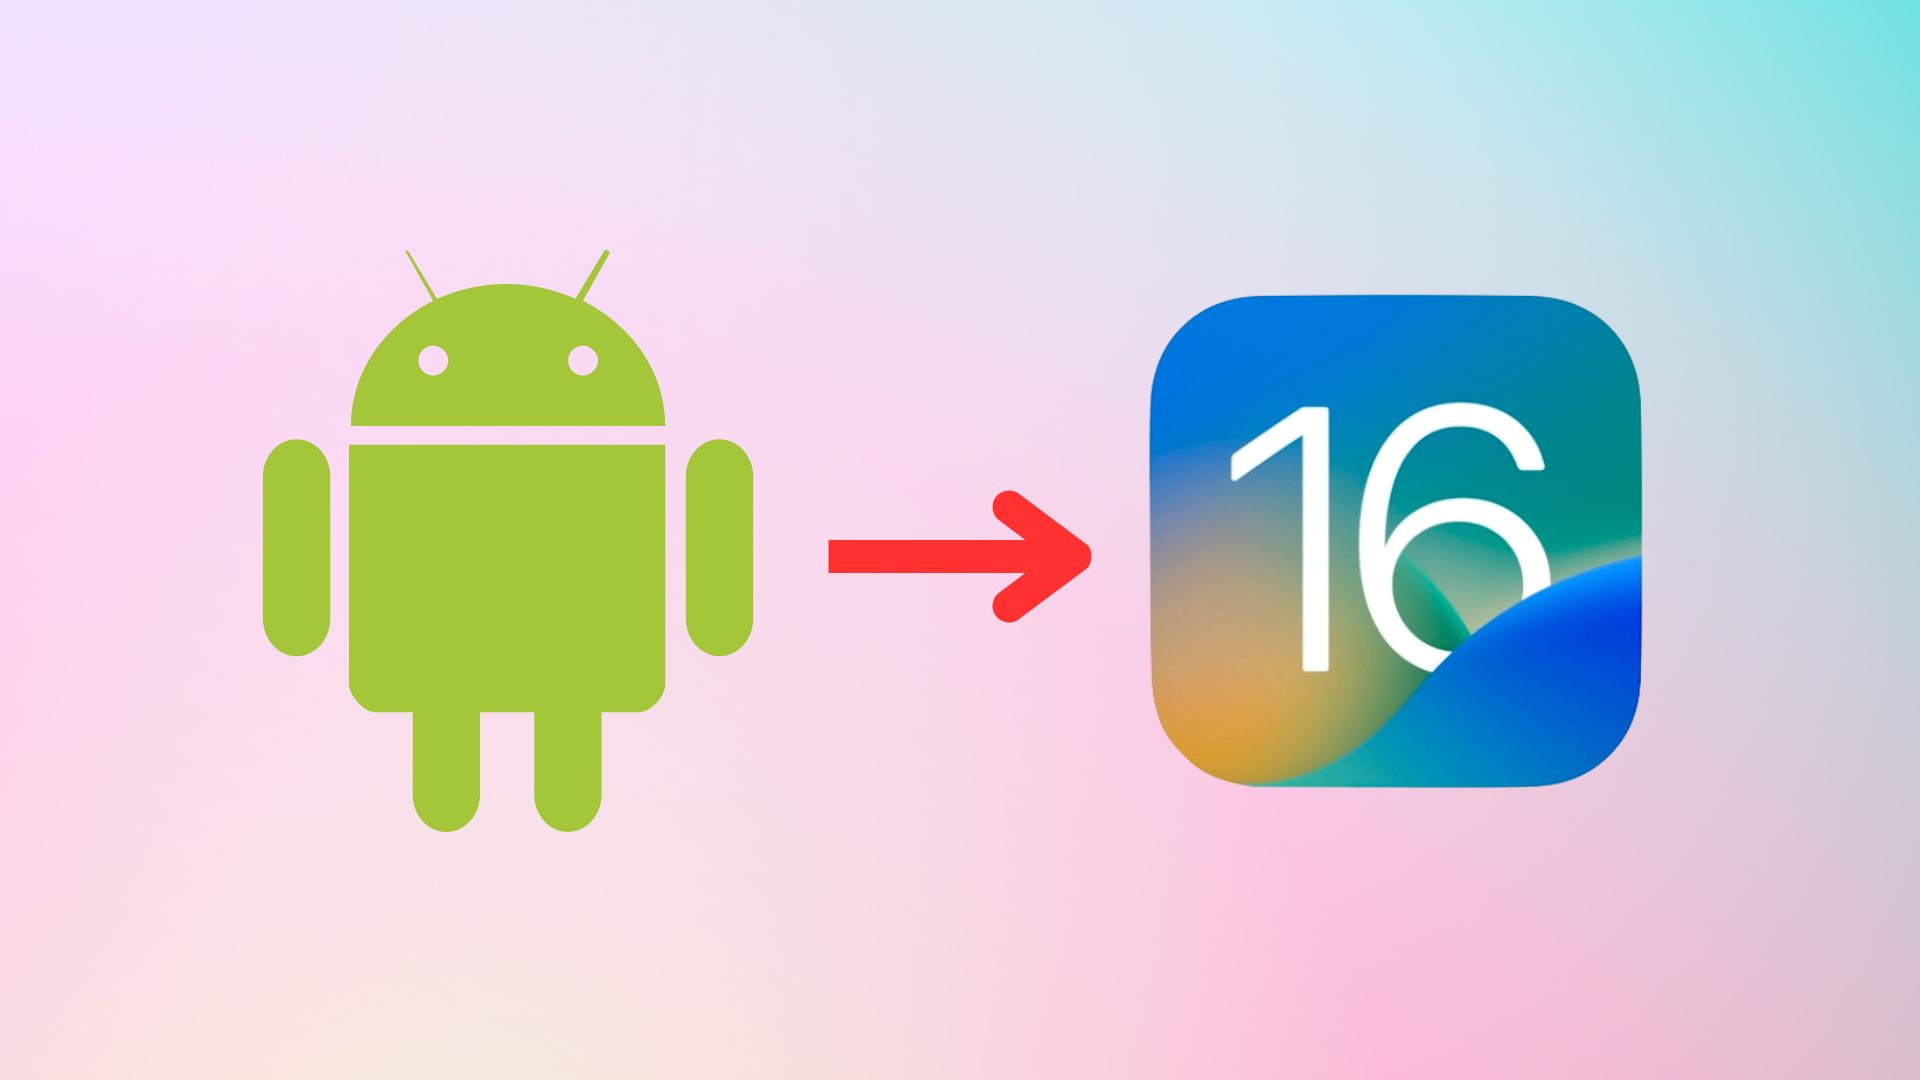 Переход на iOS, логотип Android на iOS 16